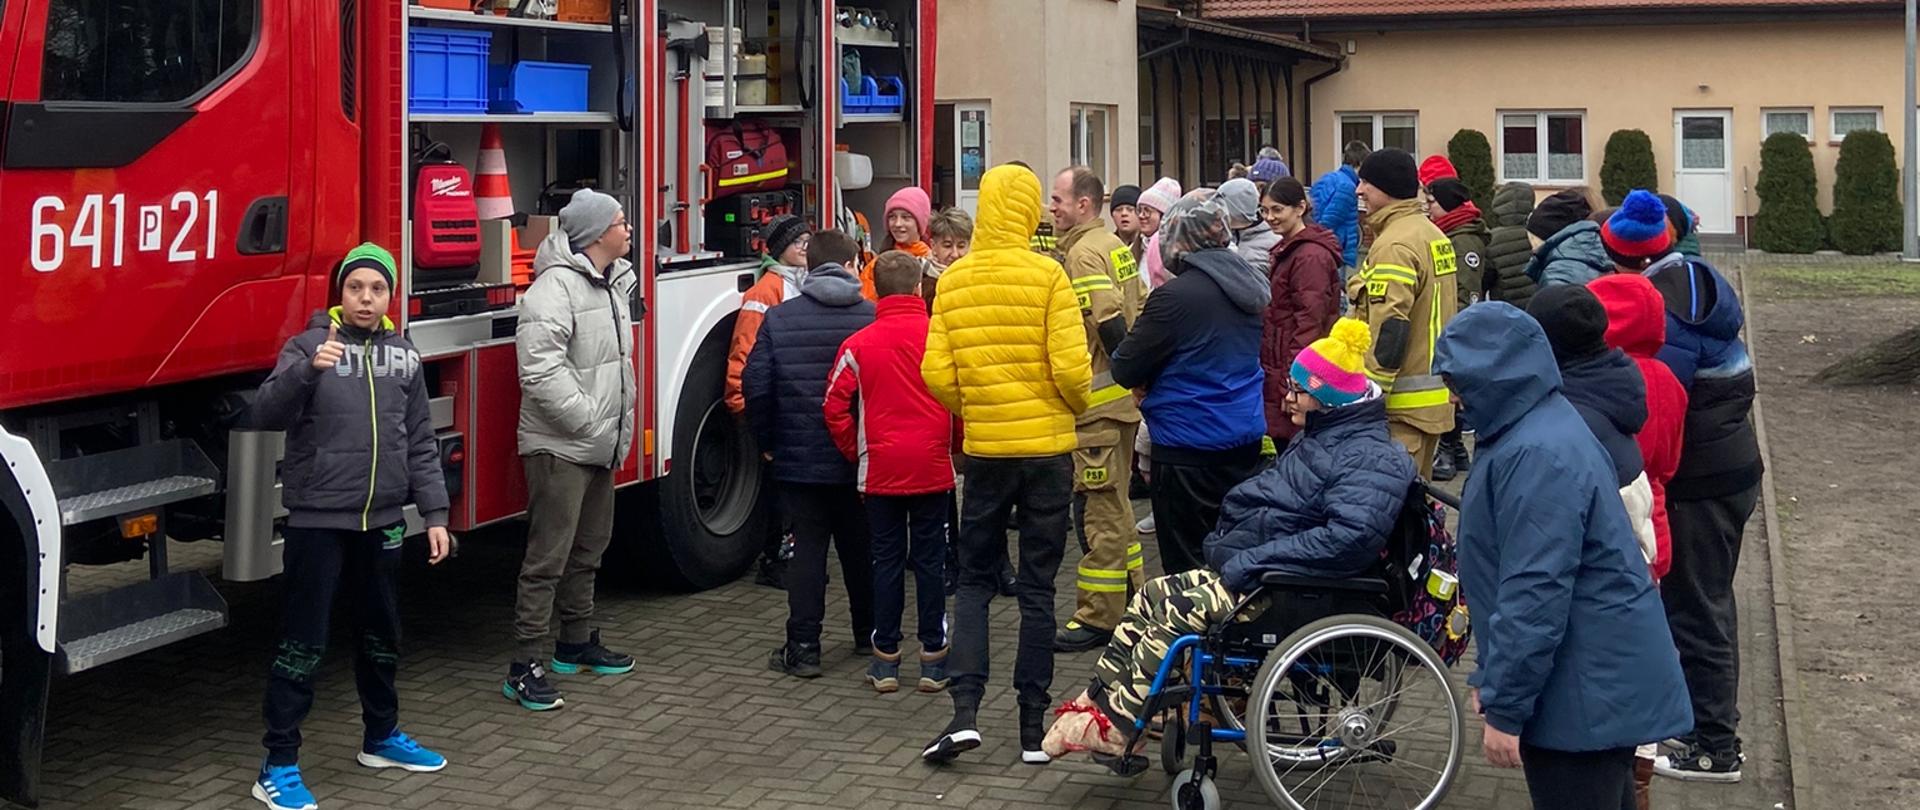 Na pierwszym planie dzieci wraz z strażakami oglądały samochód pożarniczy. Po lewej stronie średni wóz strażacki, natomiast w tle budynek zespołu szkół specjalnych w Wolsztynie. 